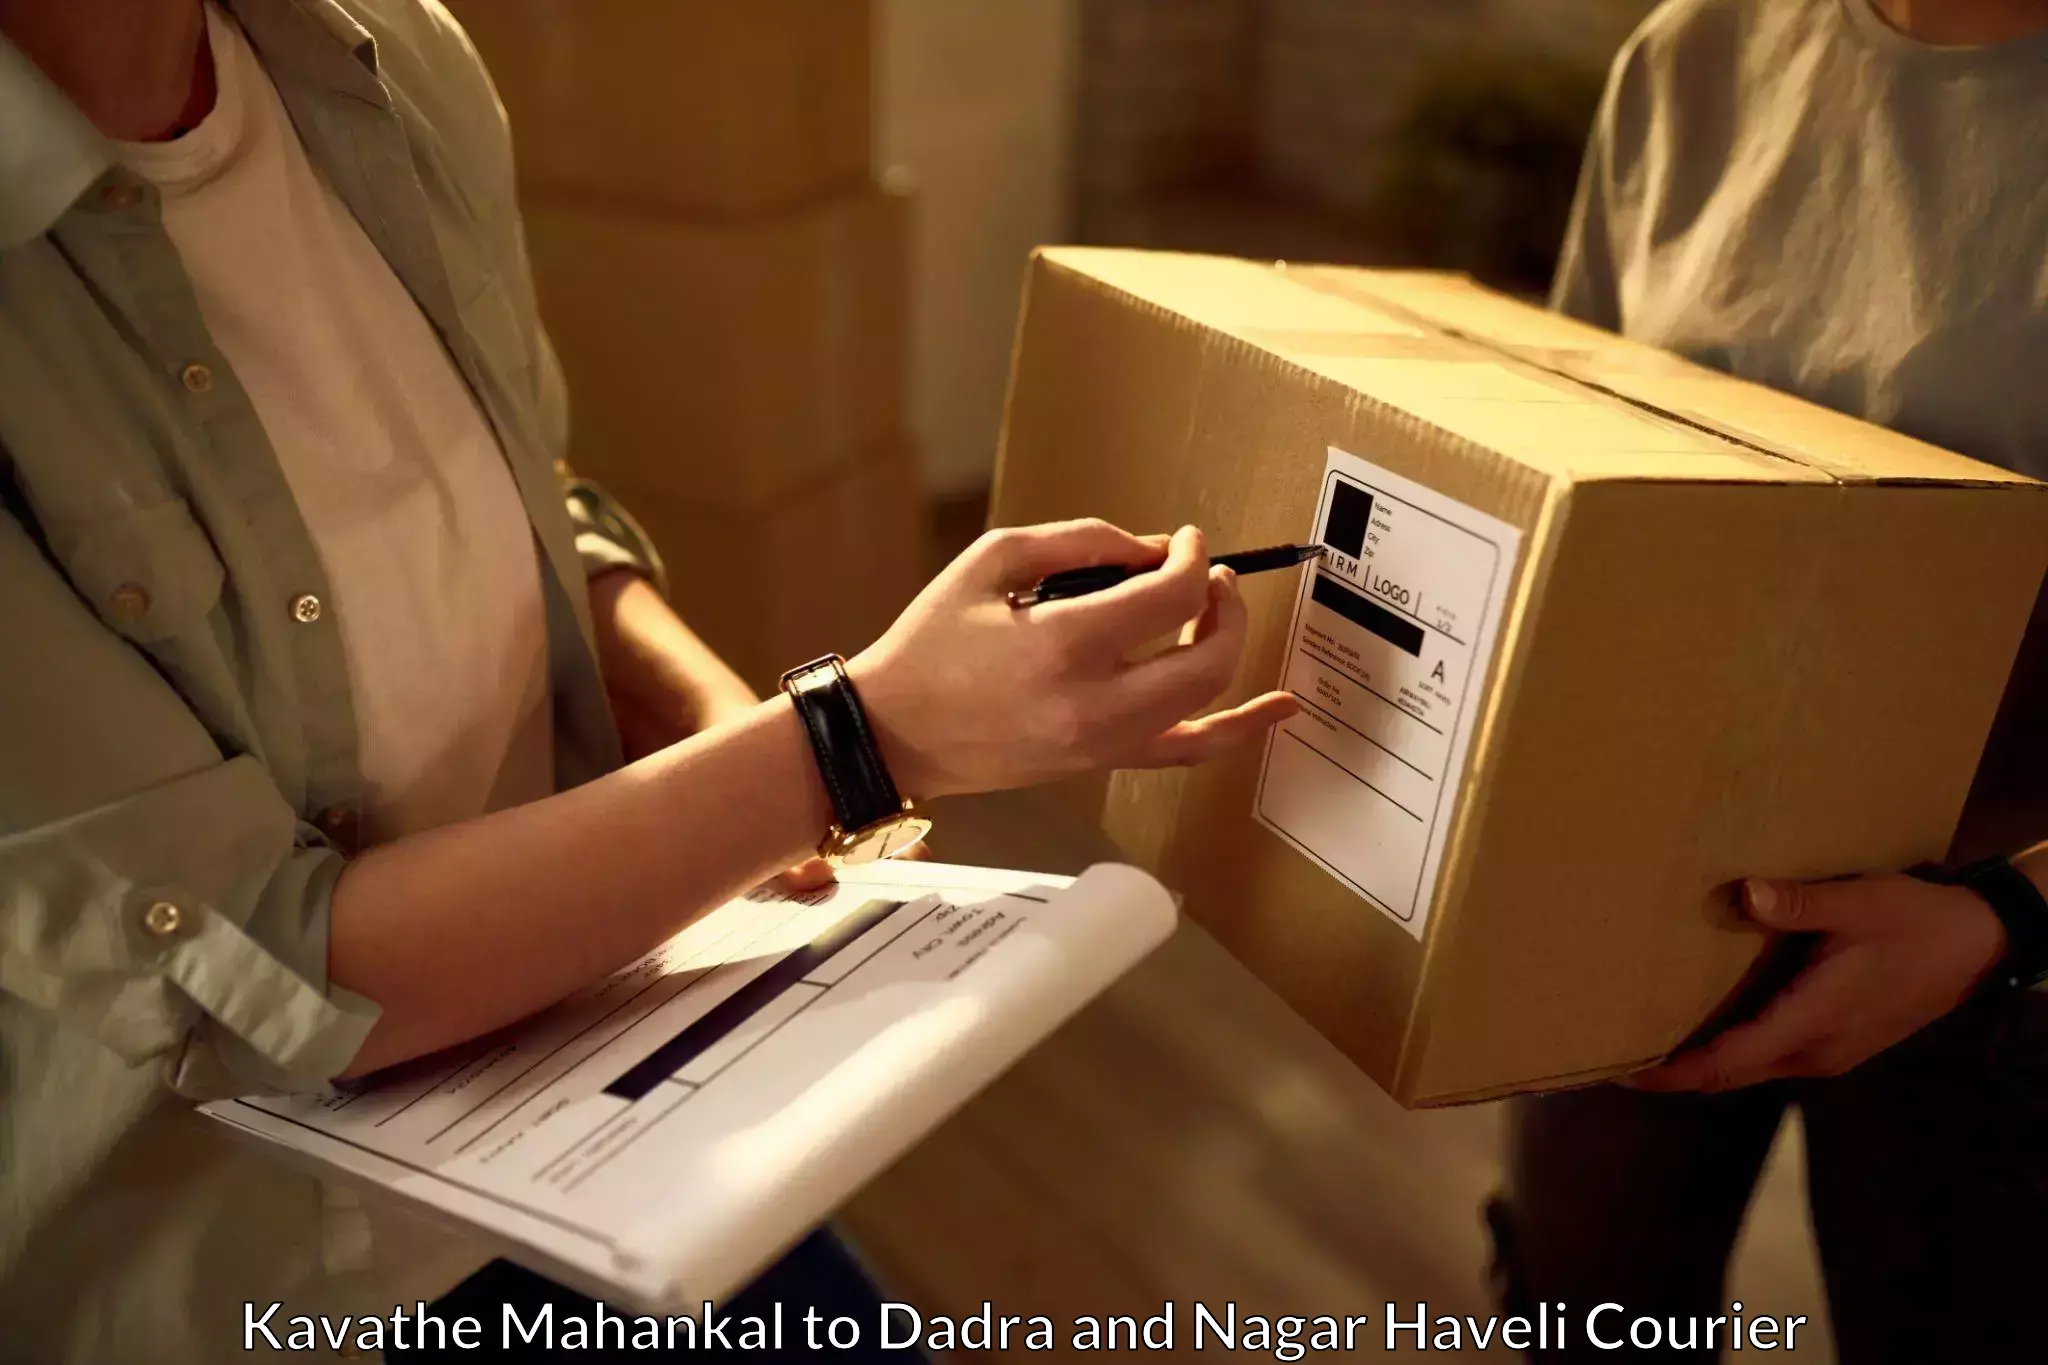 On-call courier service Kavathe Mahankal to Silvassa